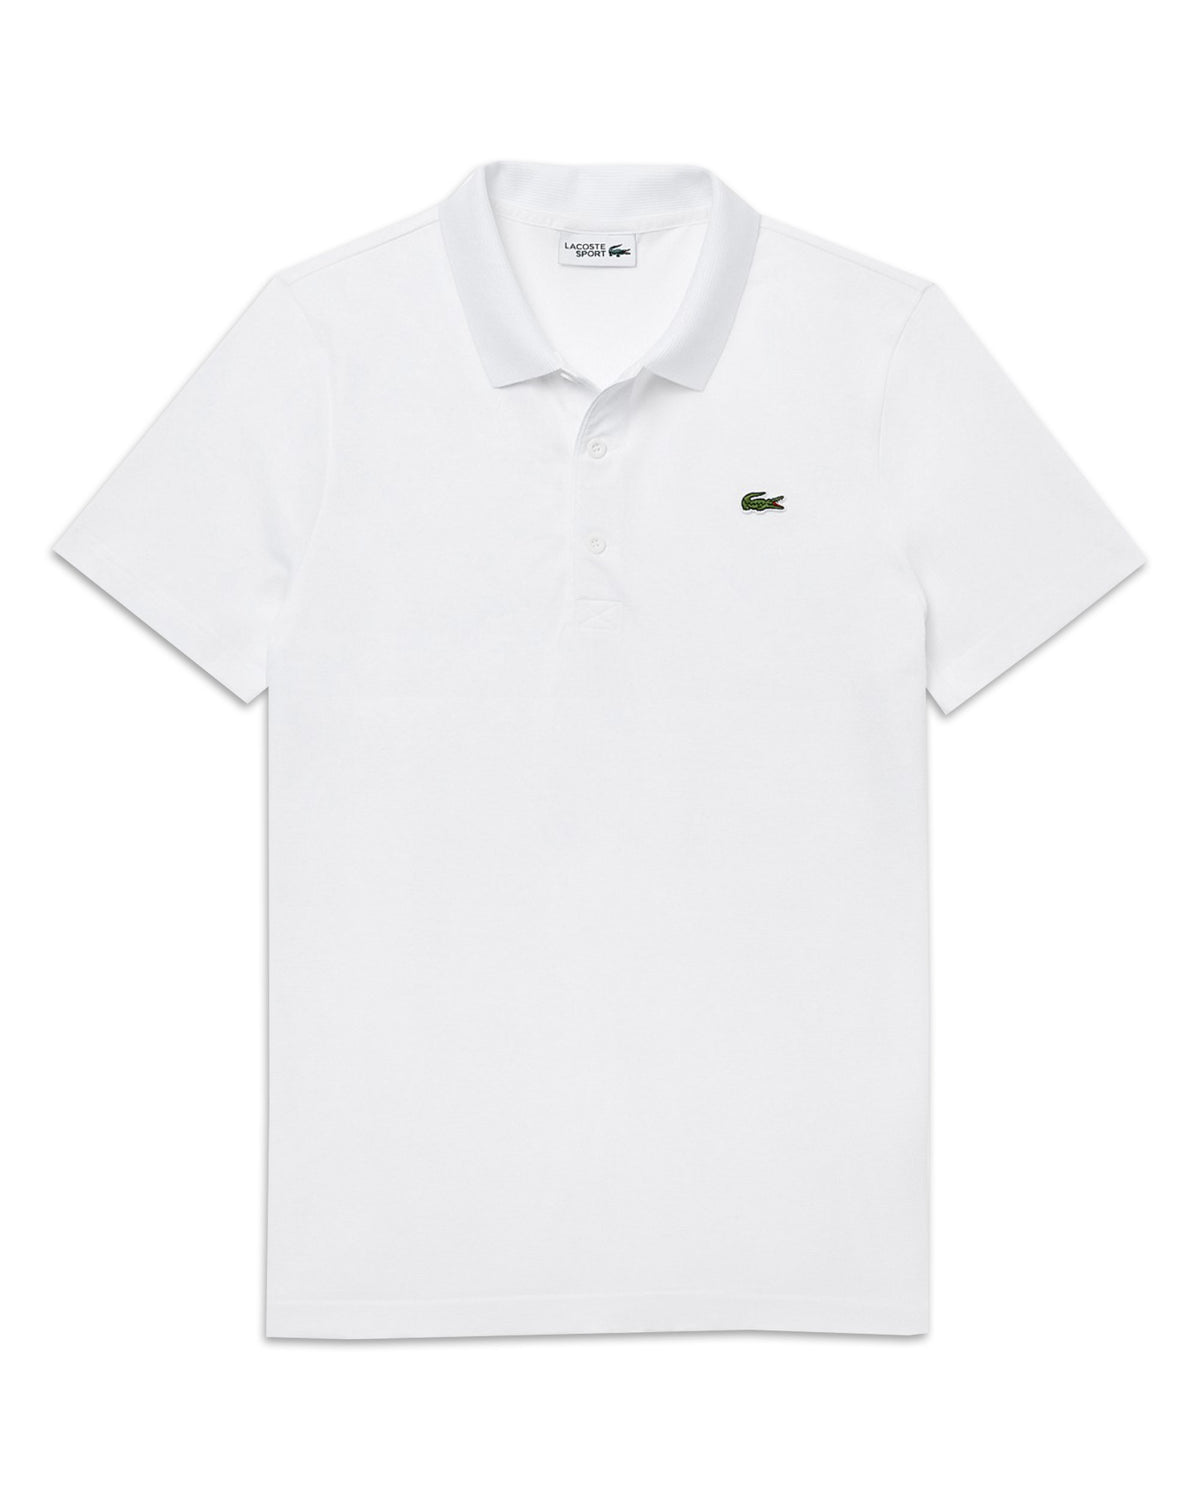 Man Polo Shirt Lacoste L.12.12. White